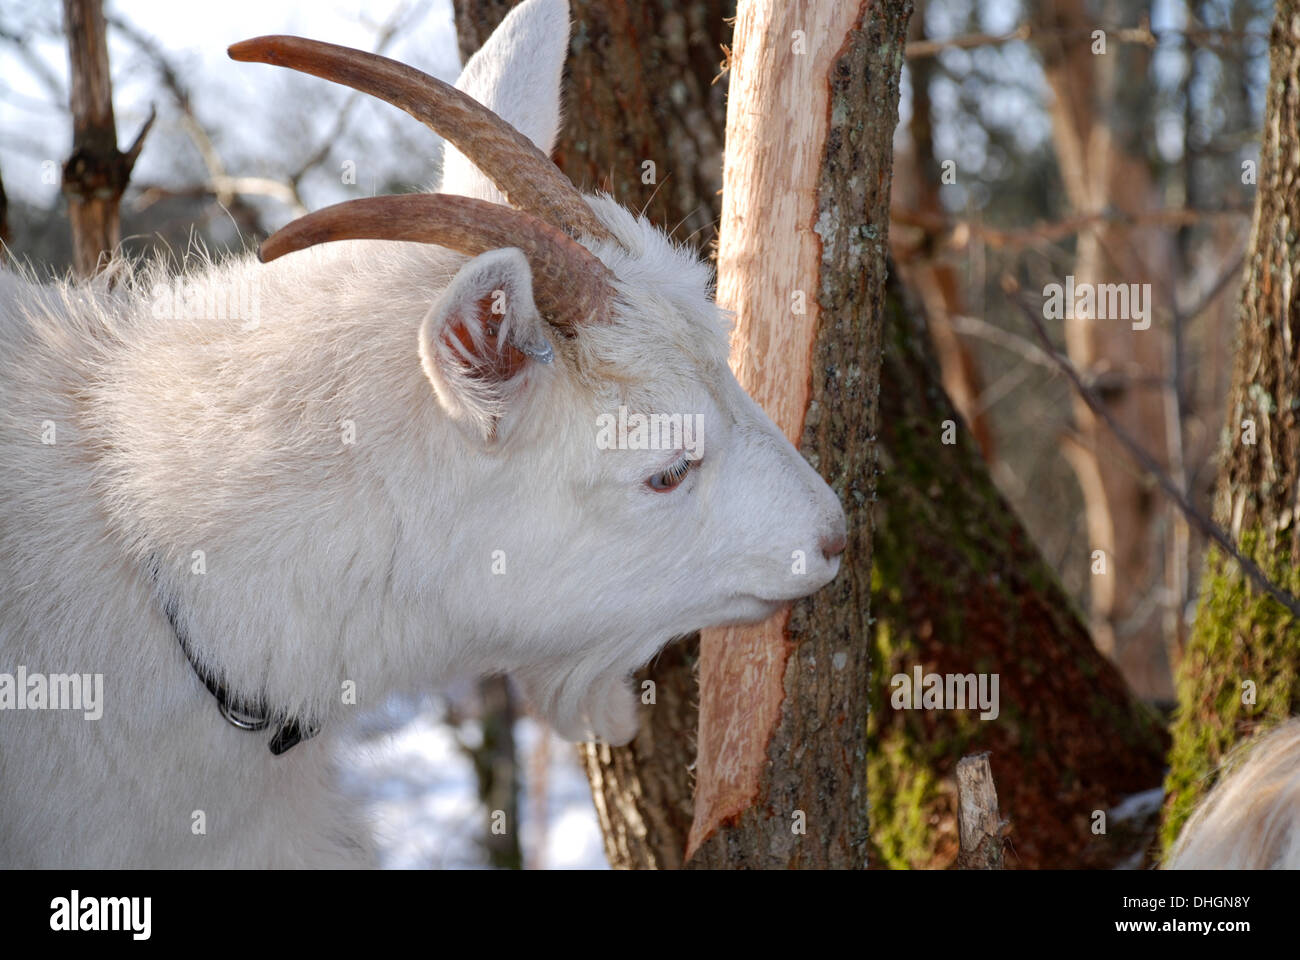 Goat eating bark Stock Photo